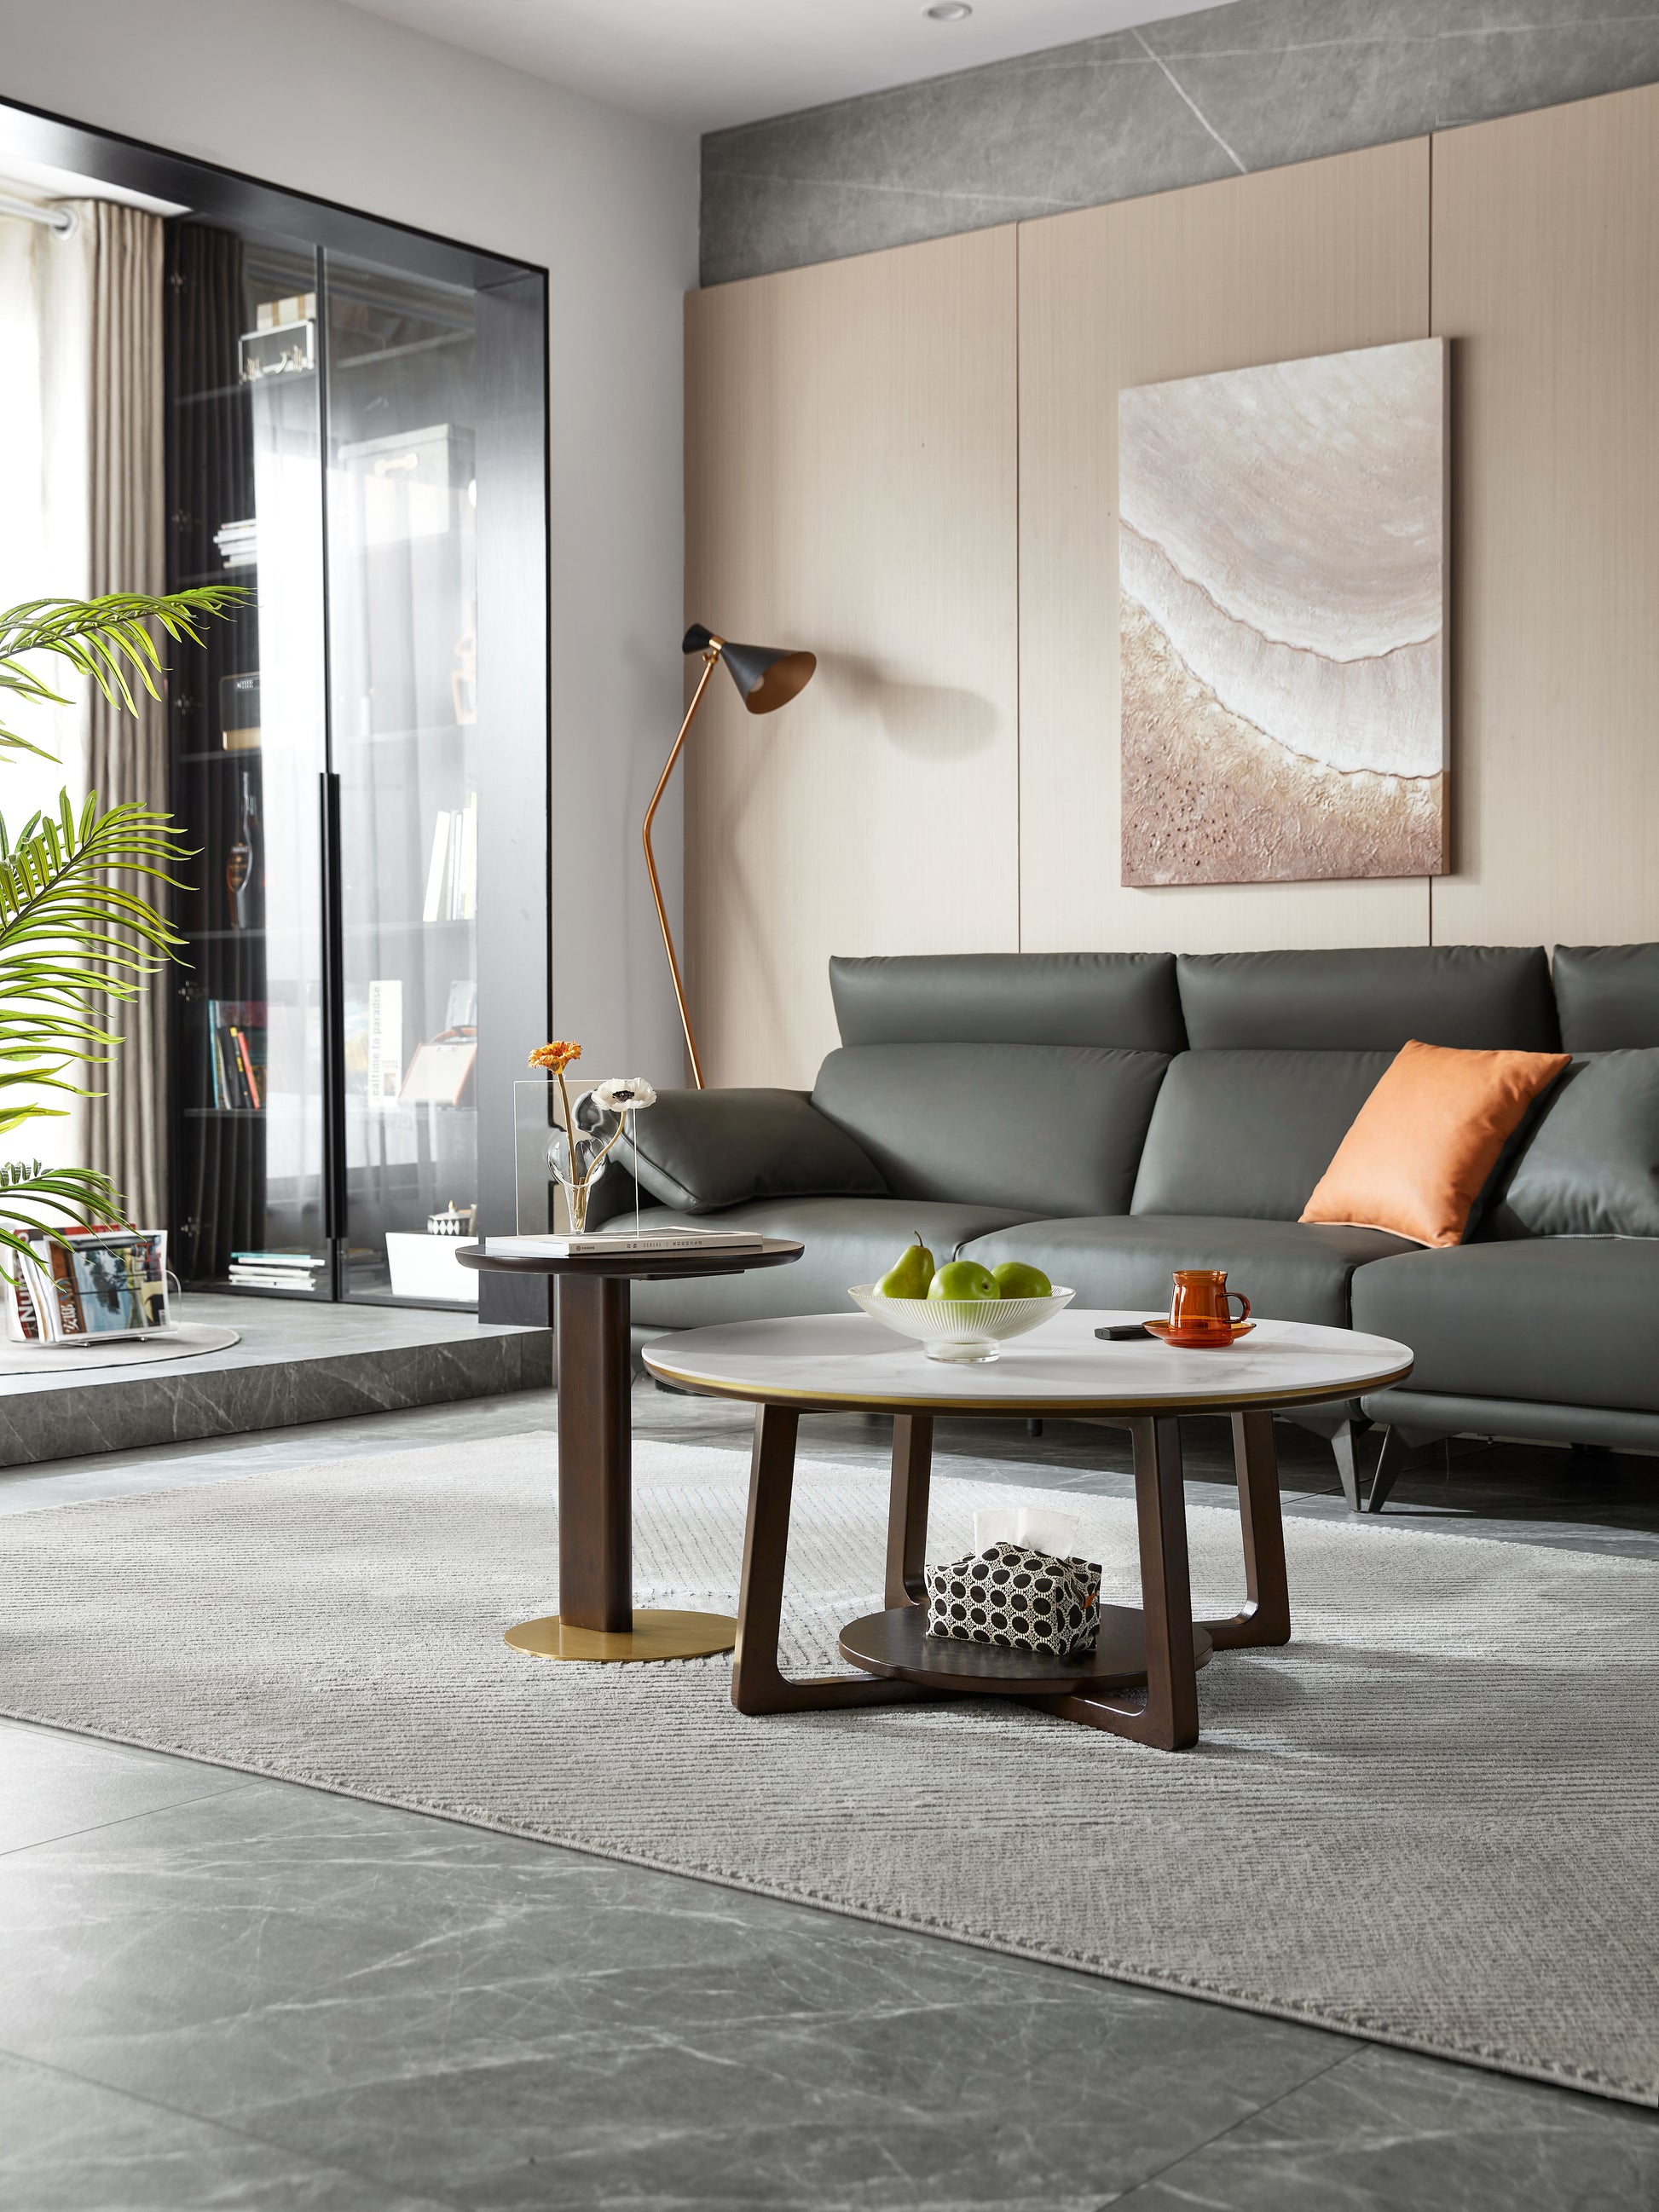 furniture-coffee table-sofa